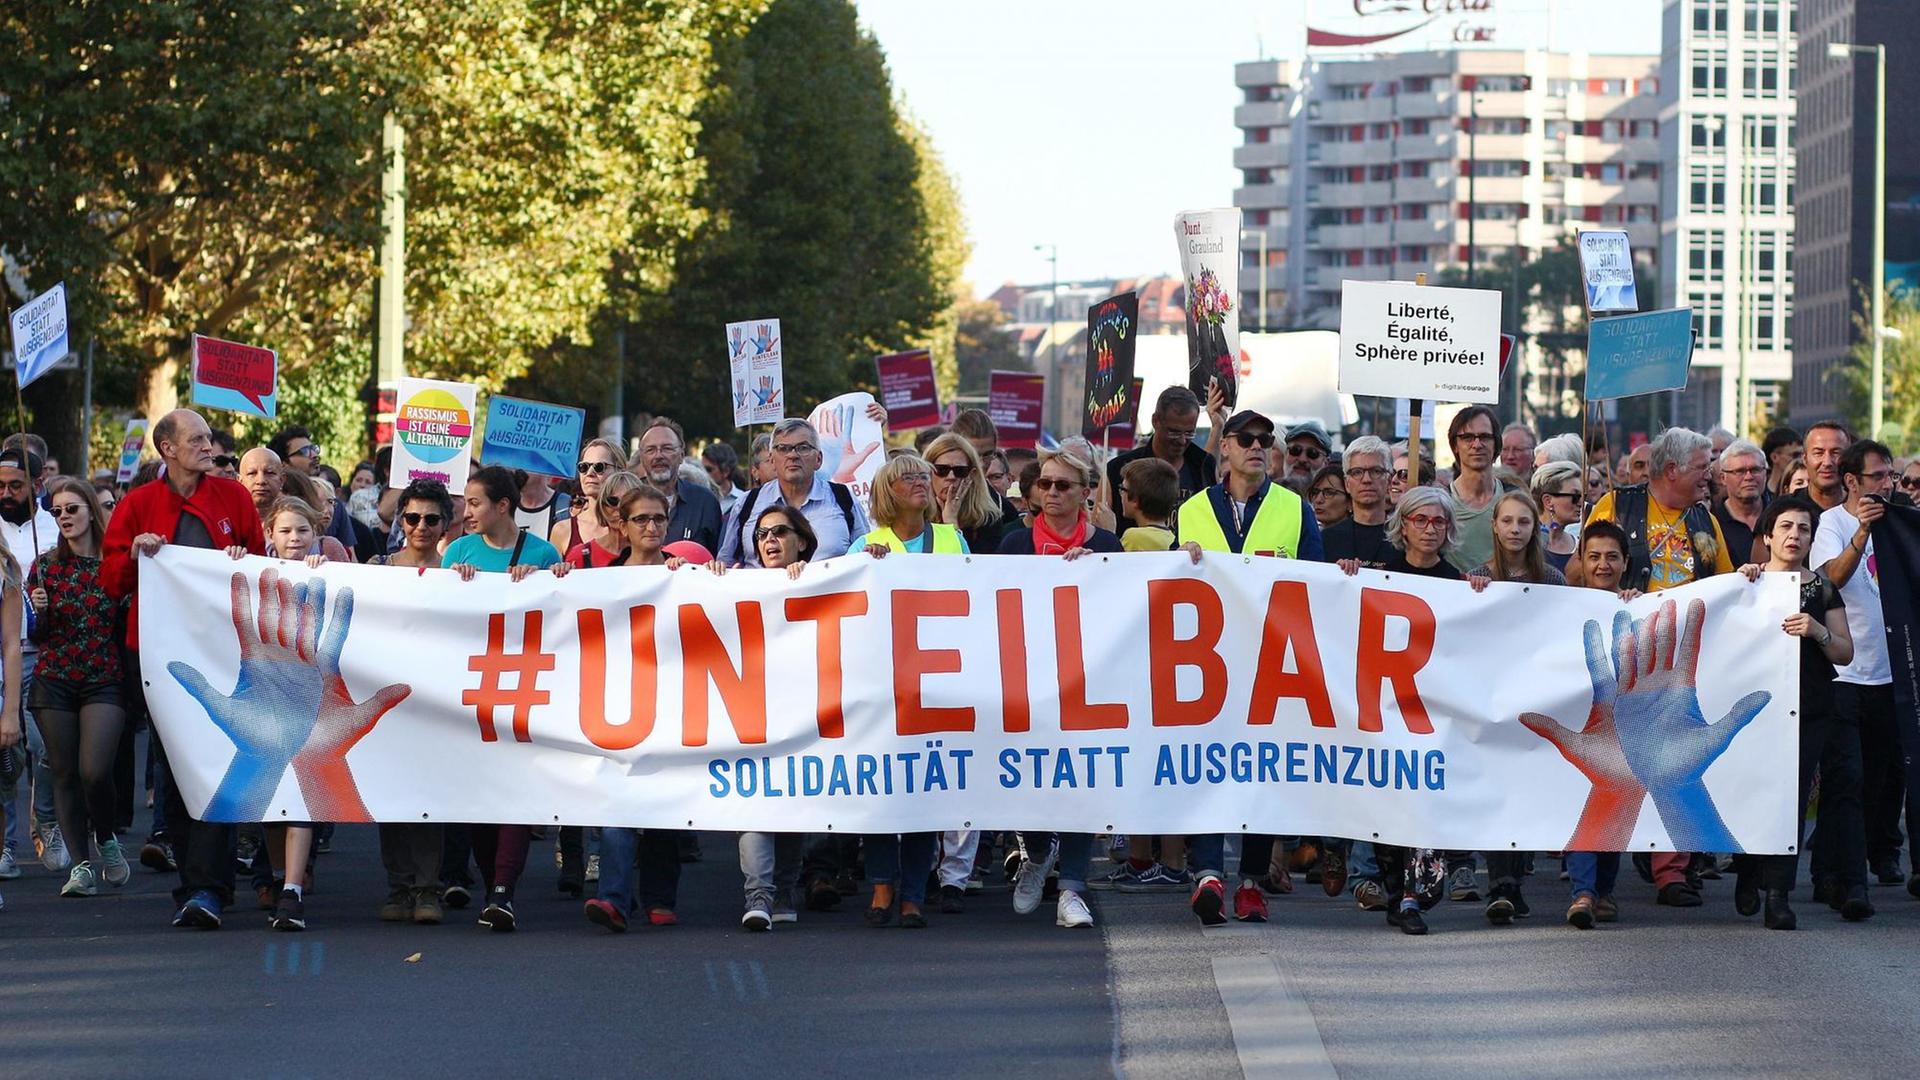 Teilnehmer der Demonstration unter dem Motto "Unteilbar Solidarität statt Ausgrenzung" tragen an der Spitze der Demo ein Transparent.